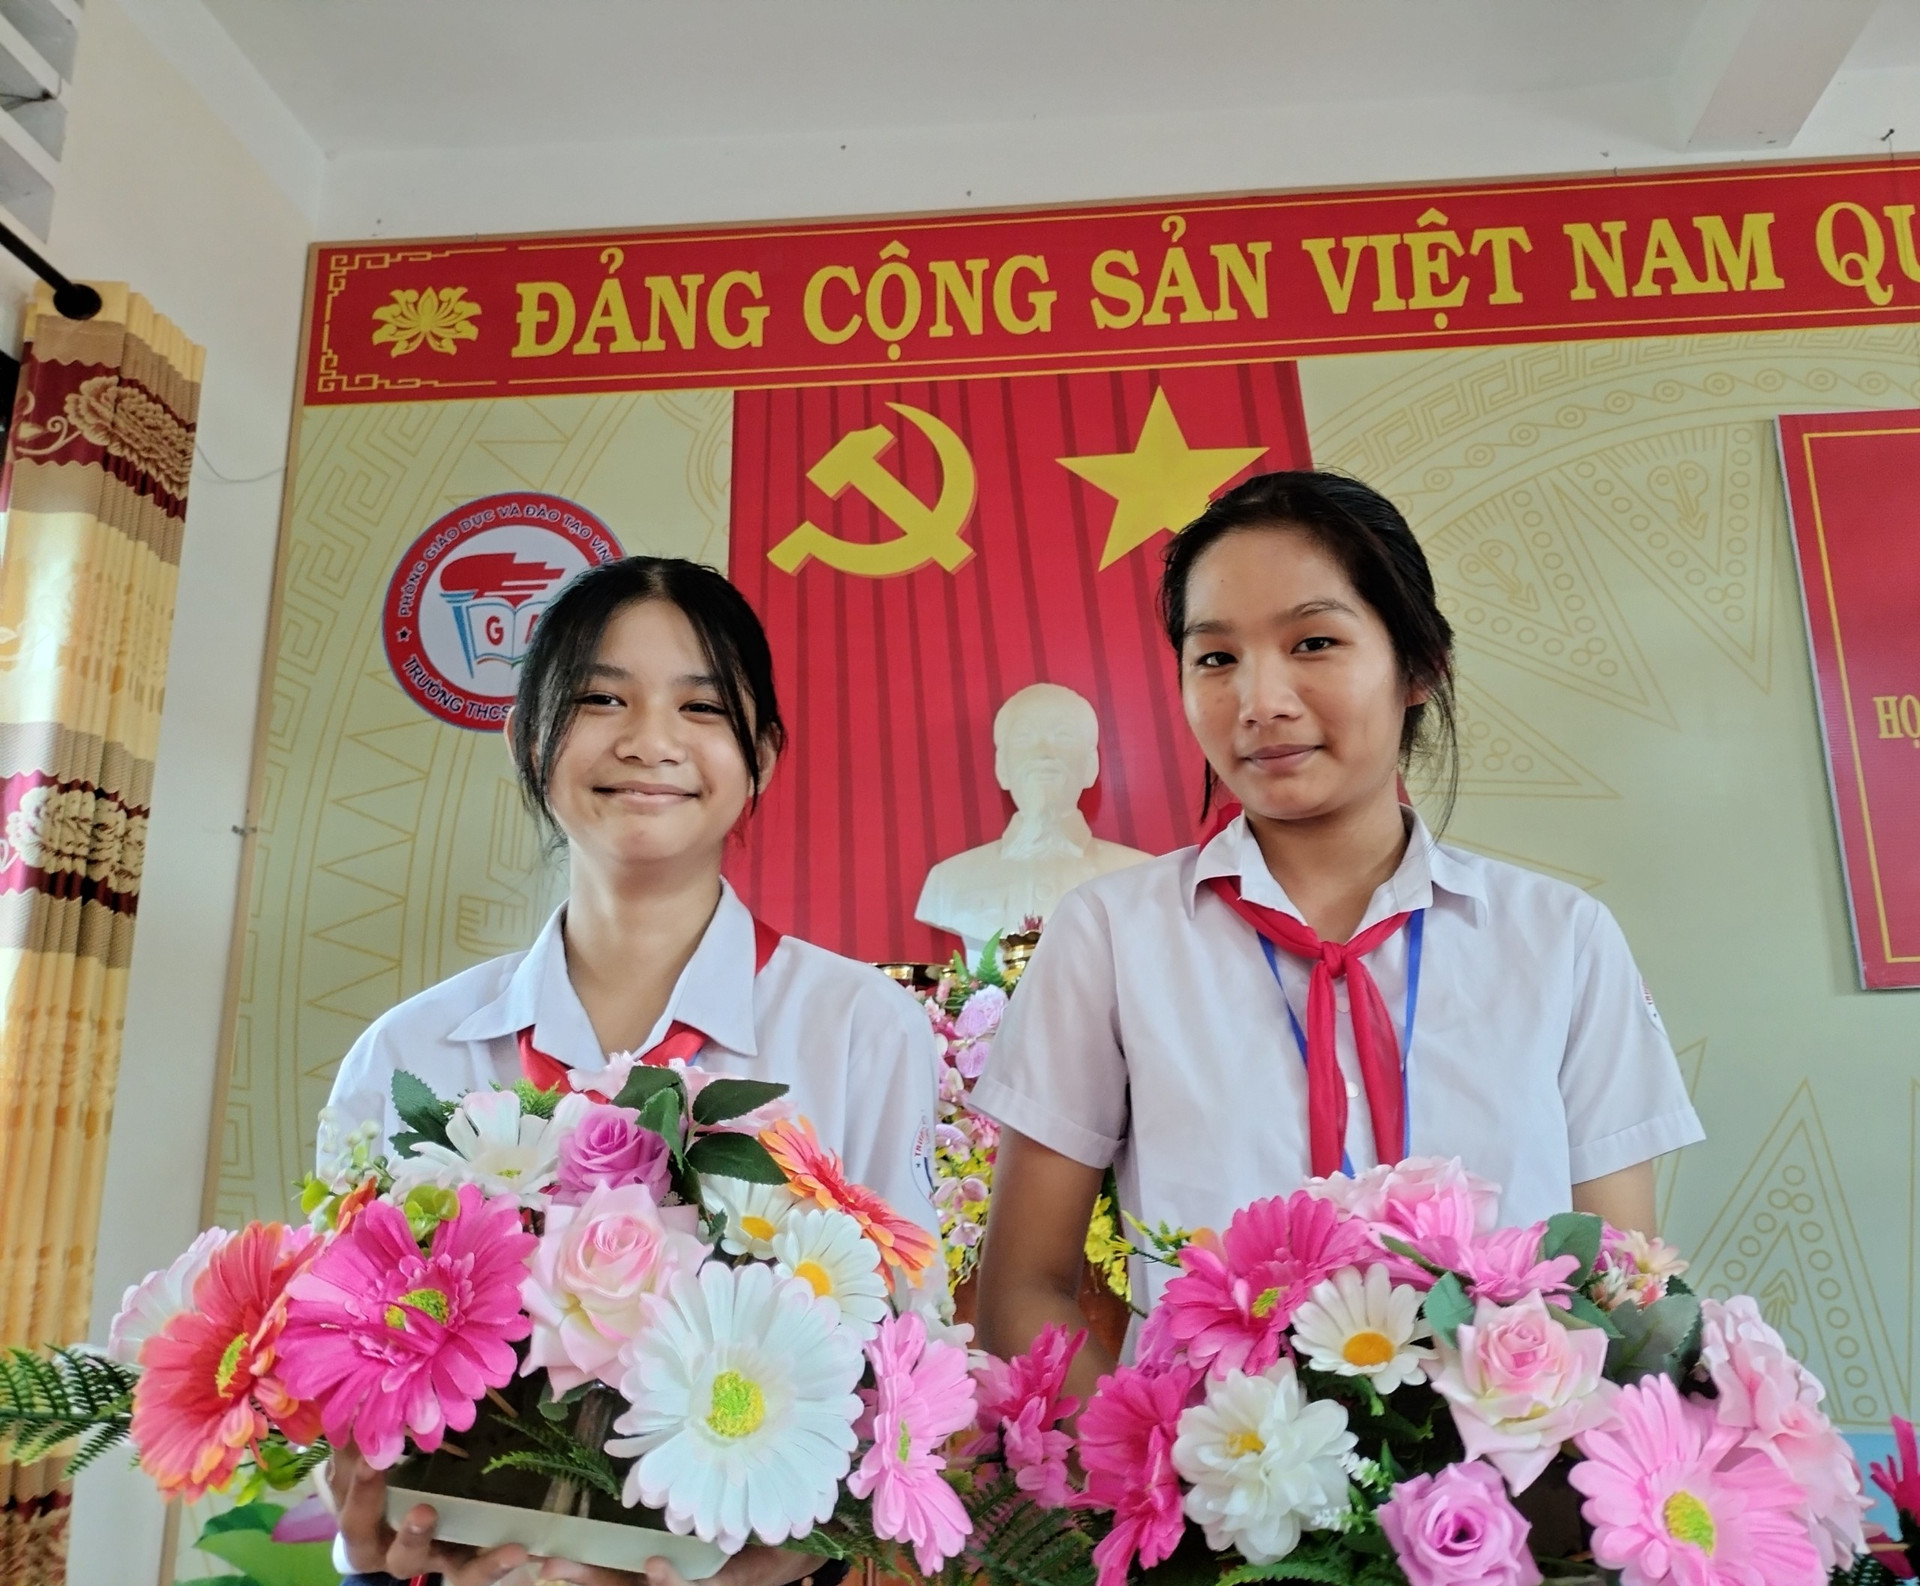 Trường THCS Lê Quý Đôn sẽ tổ chức tuyên dương, khen thưởng các em Ngọc Trinh (bên phải) và Ngọc Anh (bên trái) vào sáng thứ 2 (28/11).